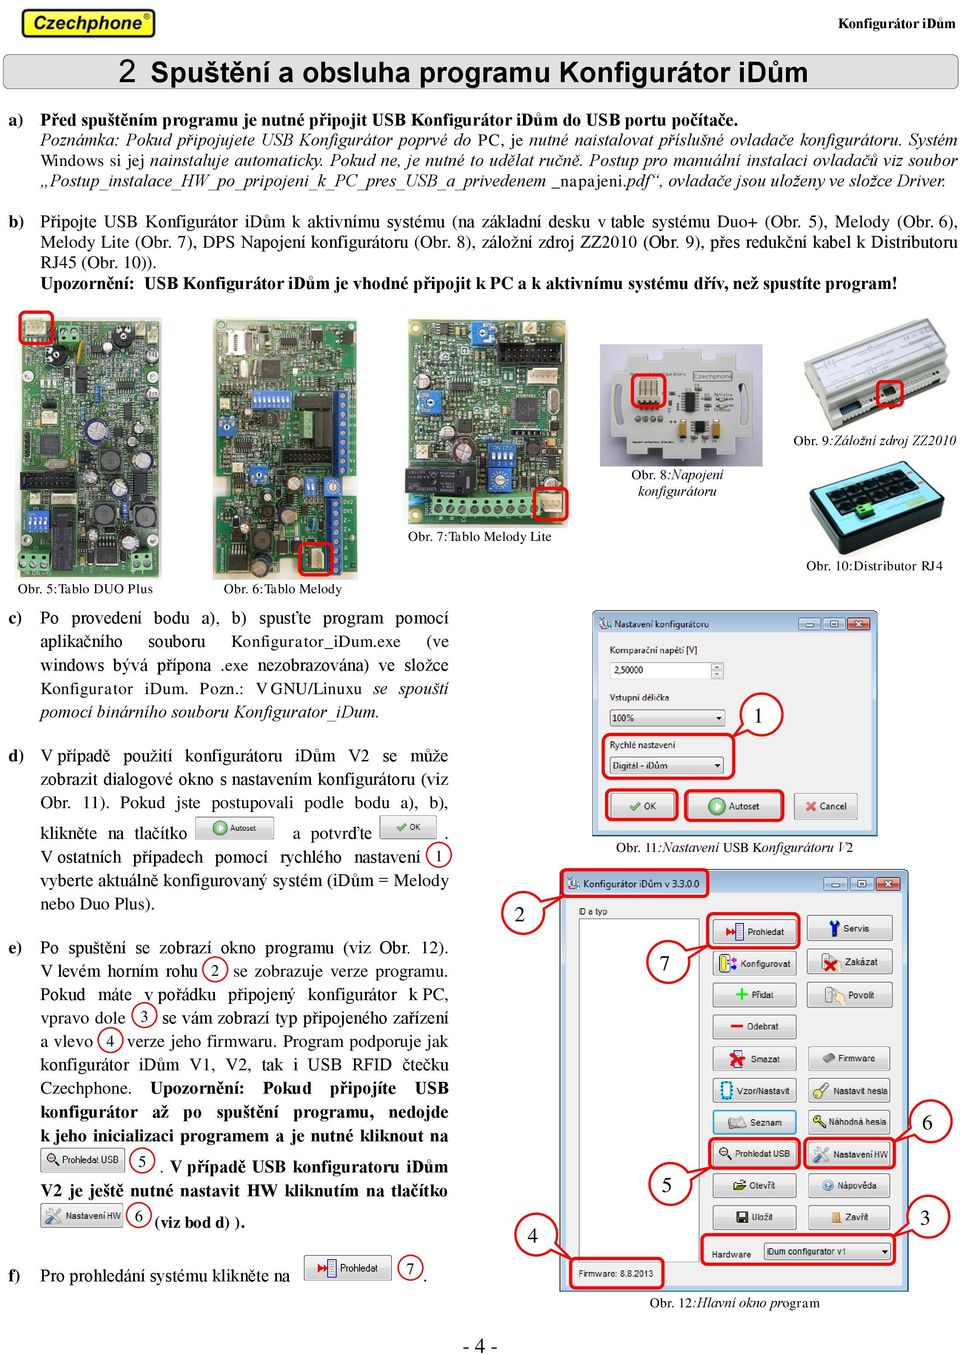 Postup pro manuální instalaci ovladačů viz soubor Postup_instalace_HW_po_pripojeni_k_PC_pres_USB_a_privedenem _napajeni.pdf, ovladače jsou uloženy ve složce Driver.